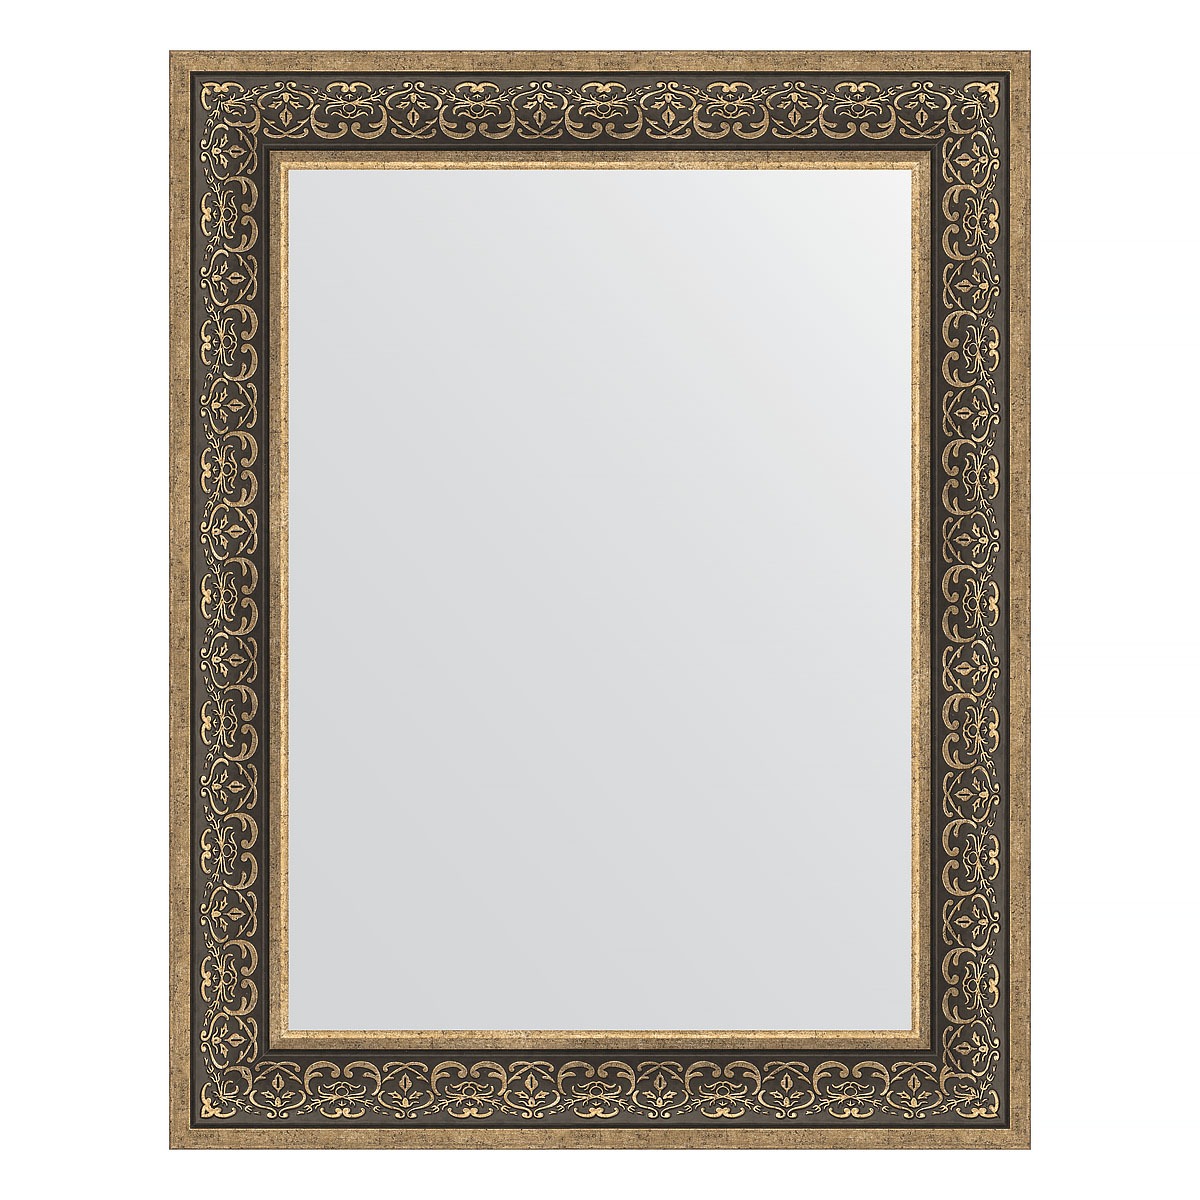 Зеркало в багетной раме Evoform вензель серебряный 101 мм 73х93 см зеркало 73х93 см вензель серебряный evoform definite by 3192